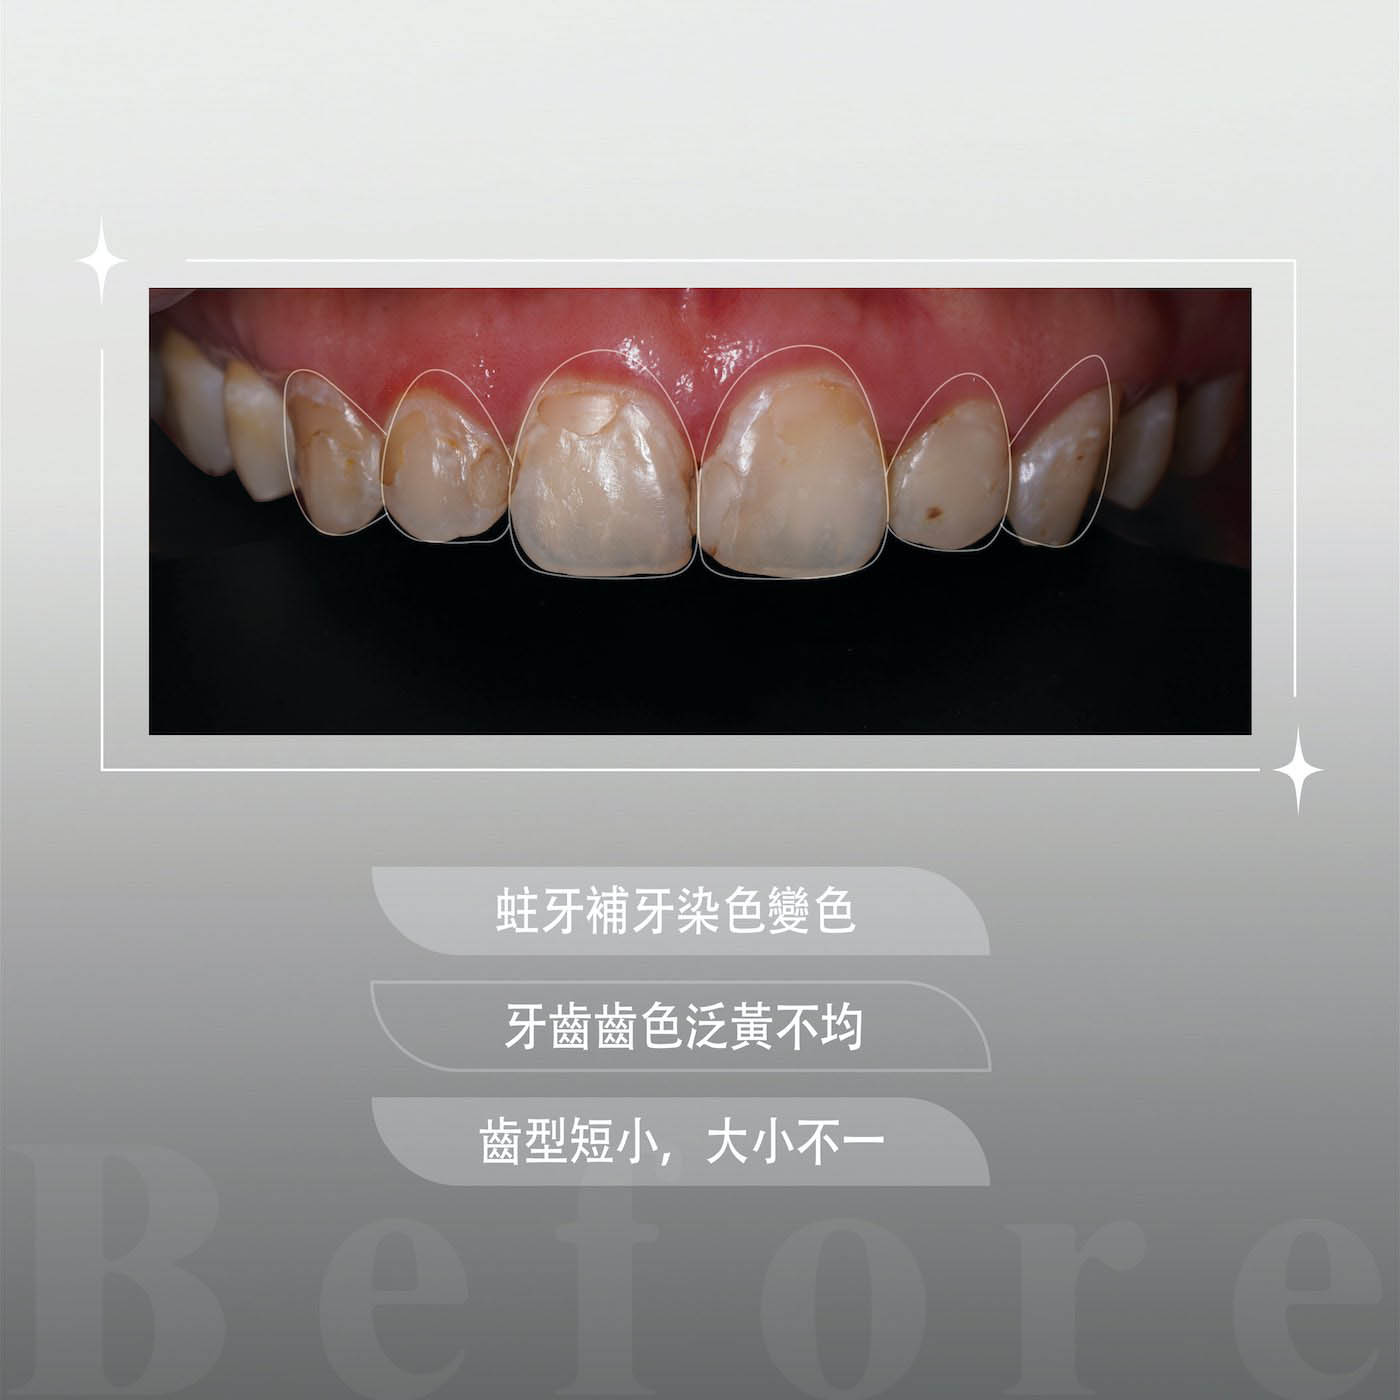 療程前的上排牙齒外觀，有牙齒黃、蛀牙補牙染色變色、齒型短小且大小不一等問題